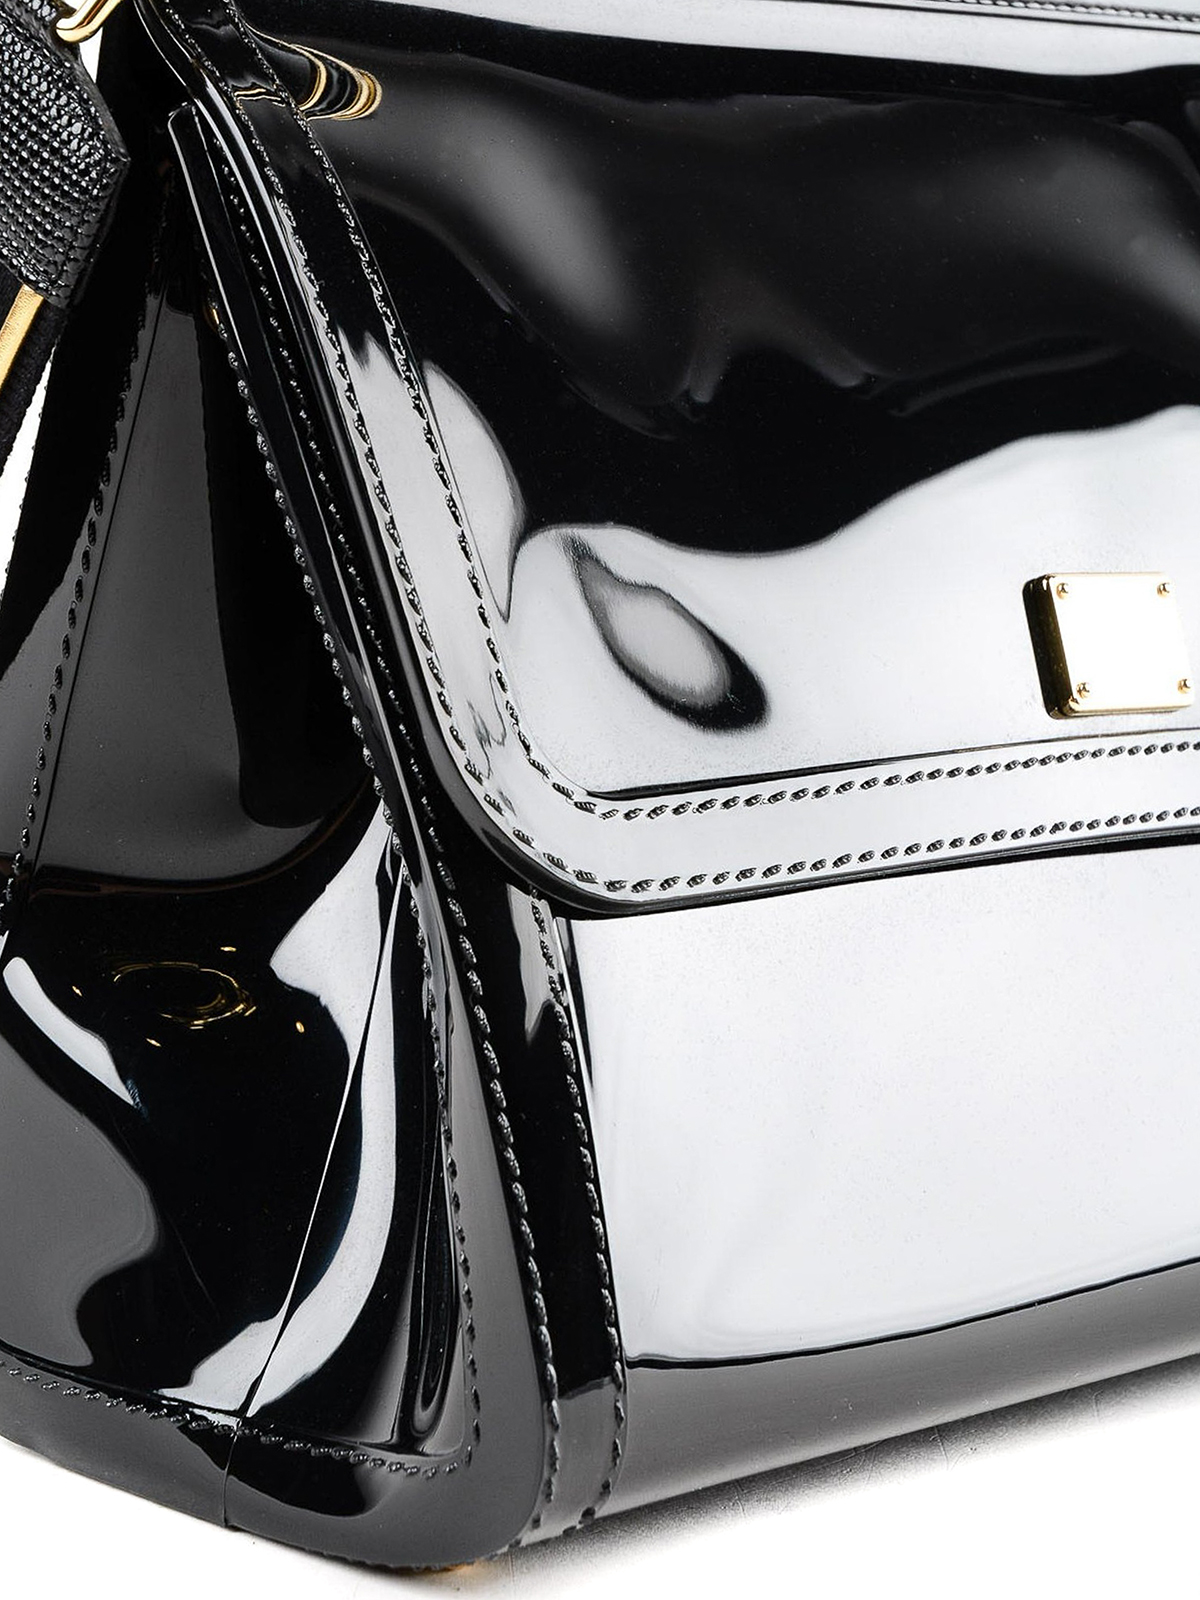 Dolce & Gabbana 'Sicily Large' shoulder bag, Women's Bags